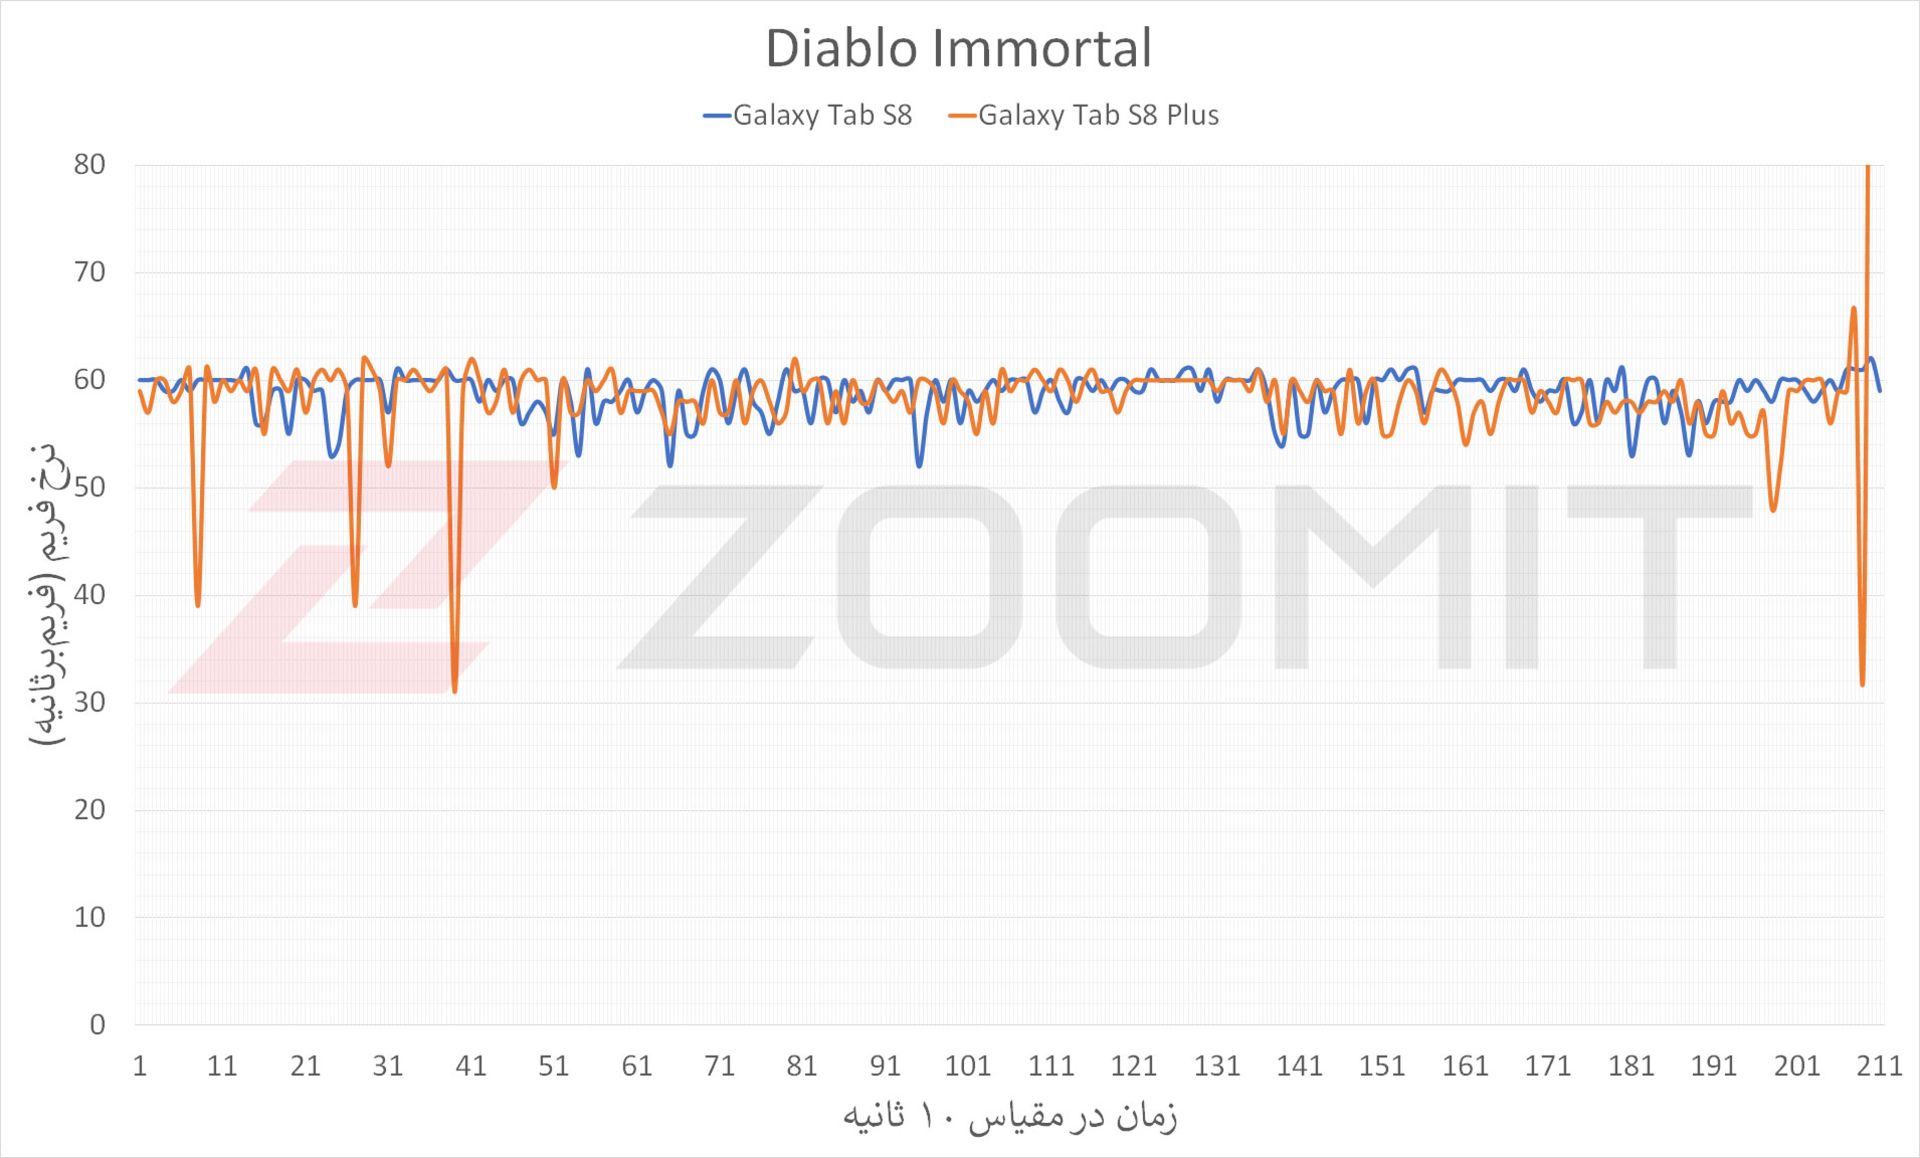 عملکرد گلکسی تب اس ۸ و اس ۸ پلاس در اجرای بازی Diablo Immortal